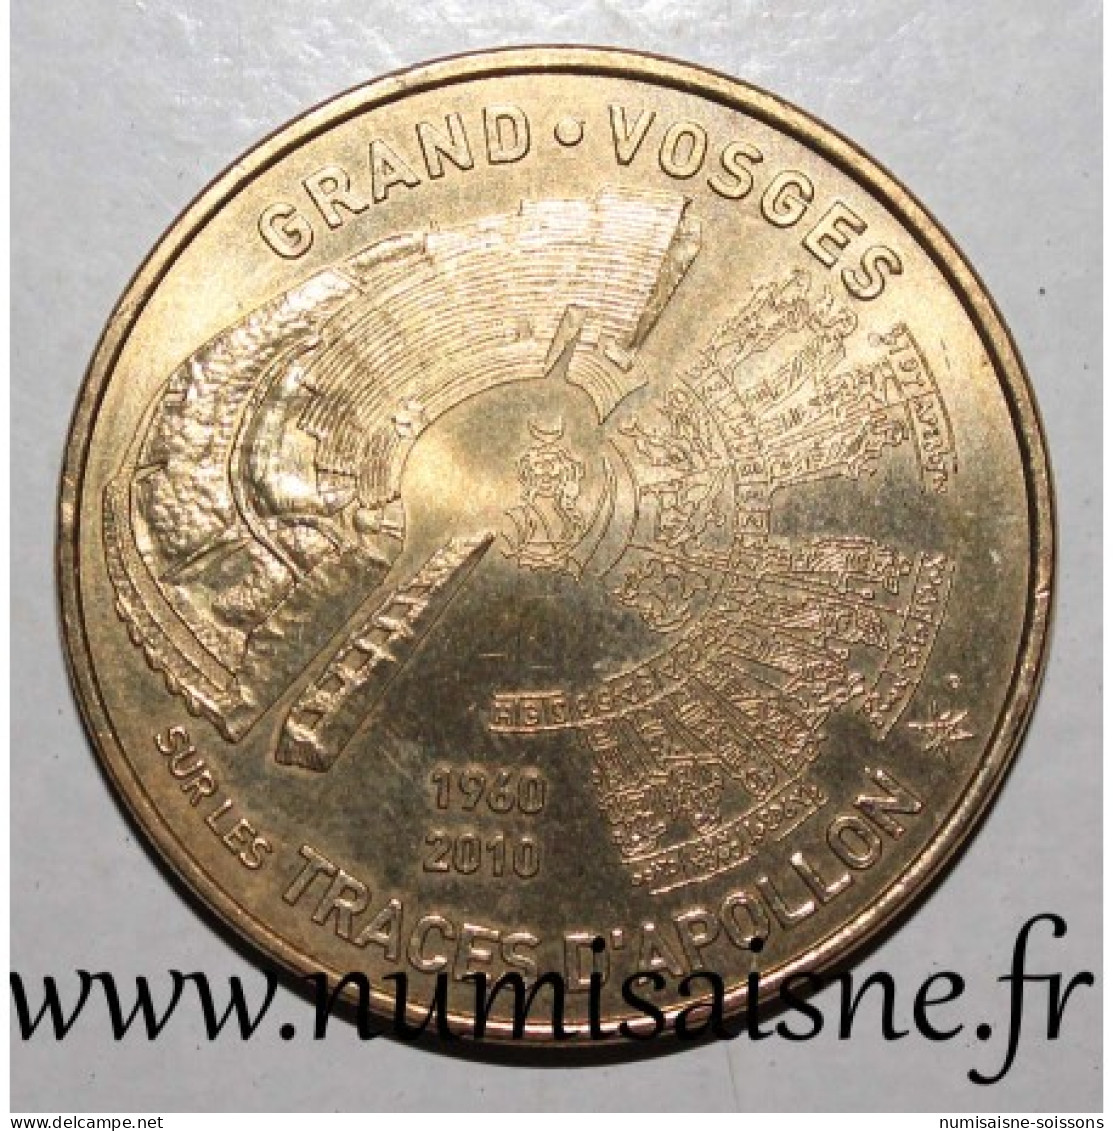 88 - GRAND - VOSGES - TRACES D'APOLLON - 1960 - Monnaie De Paris - 2010 - 2010